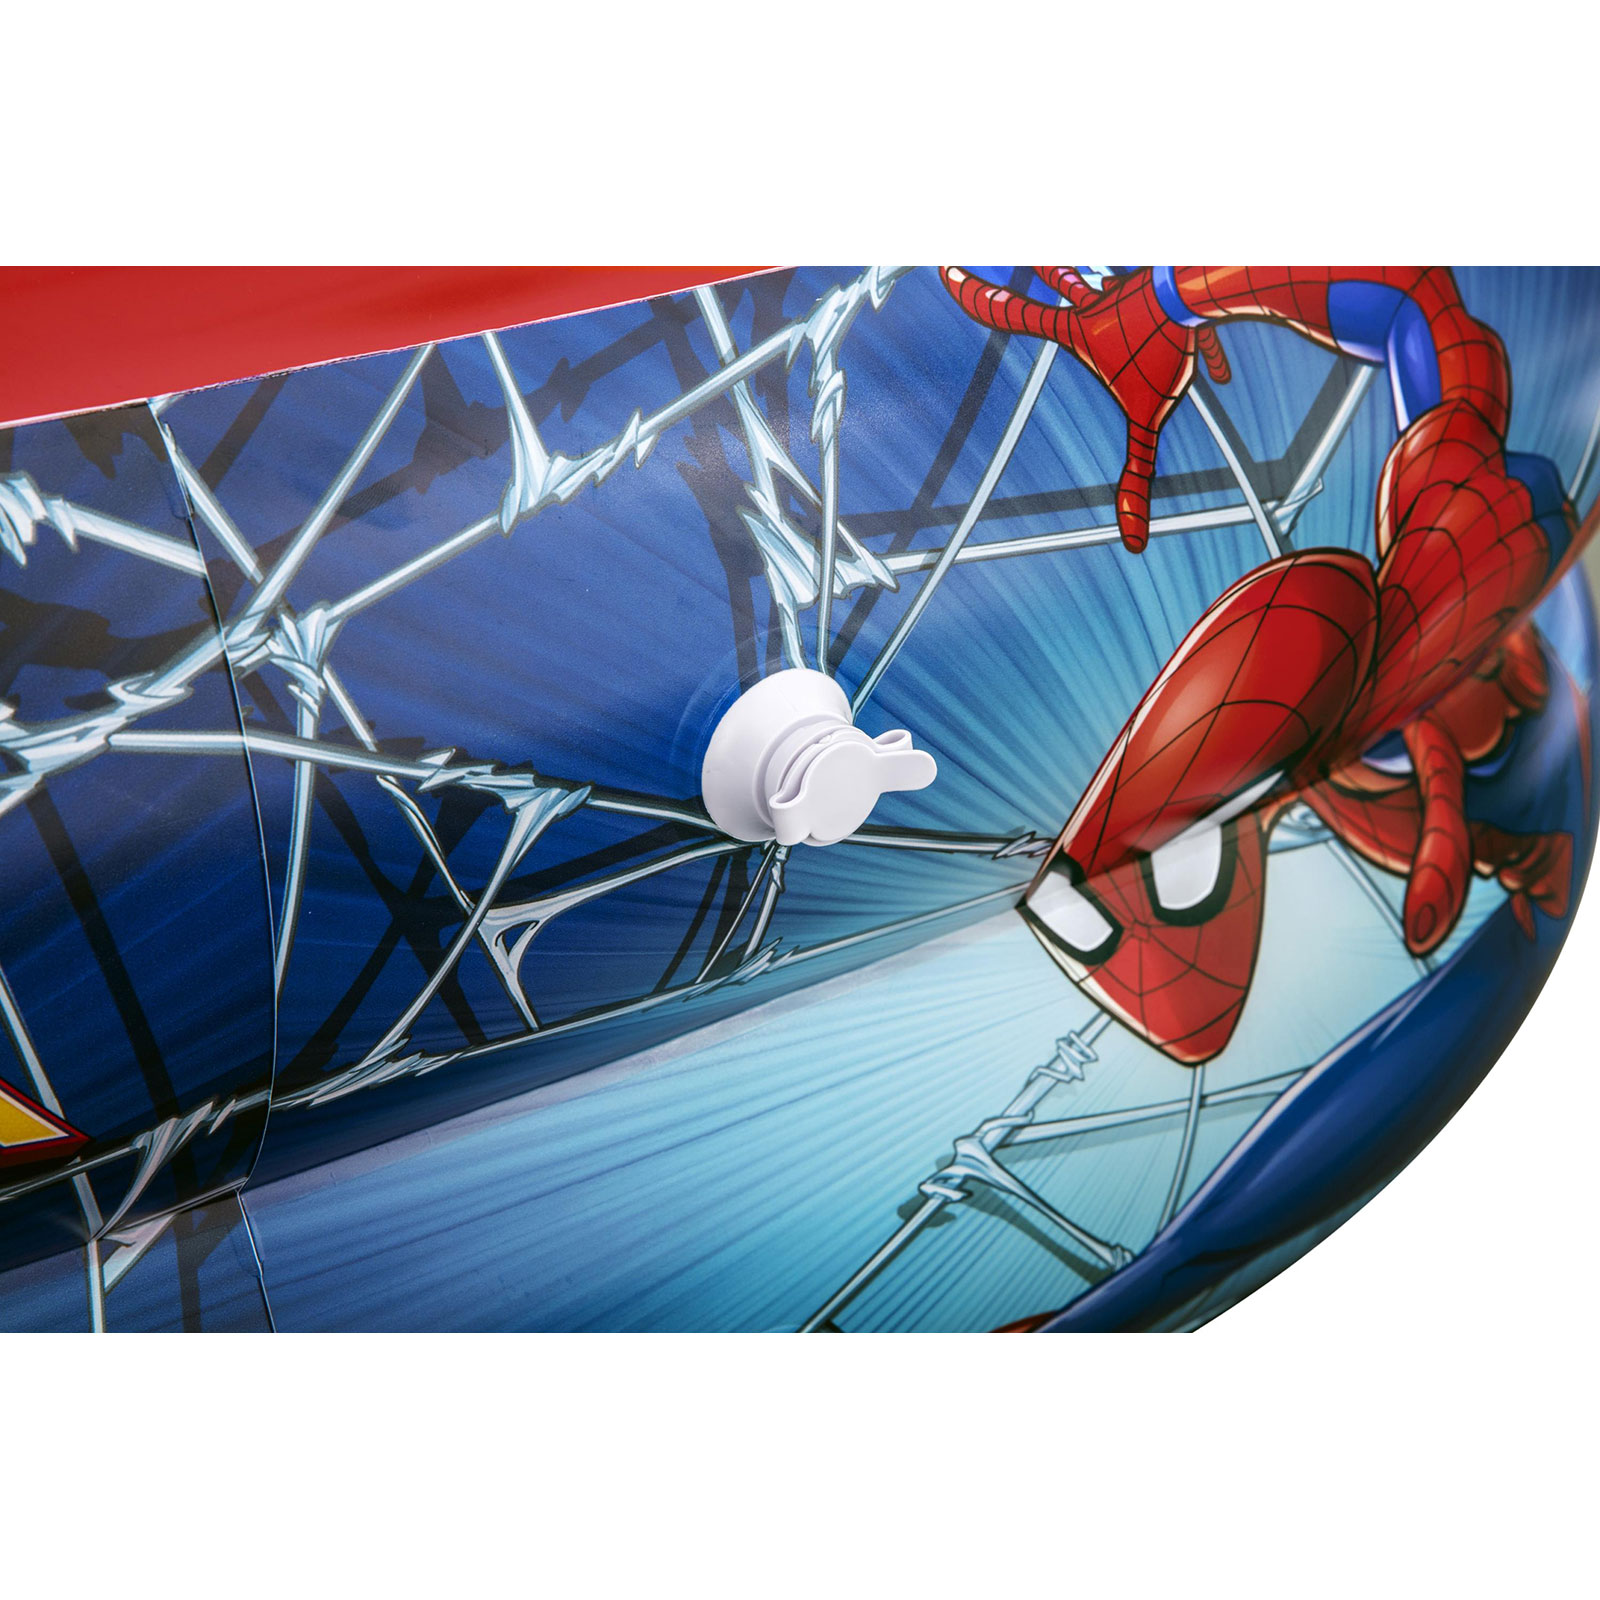 Piscina Hinchable Autoportante Infantil Bestway 200x146x48 Cm Diseño Spider Man Rápida Instalación